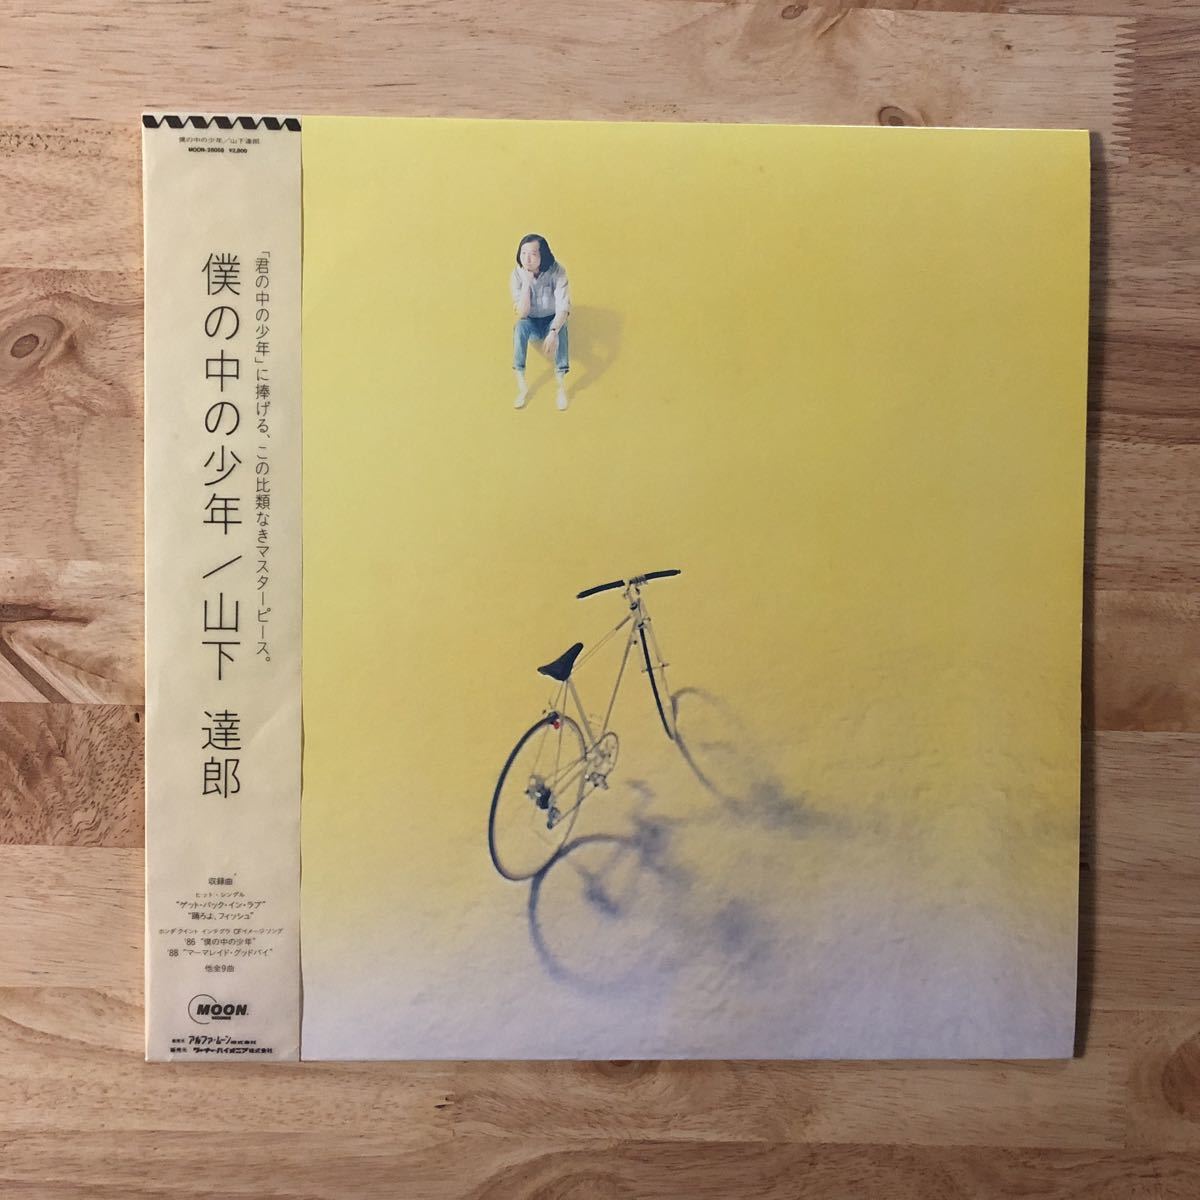 LP 山下達郎/僕の中の少年[オリジナル盤:帯:歌詞カード付き:新東京